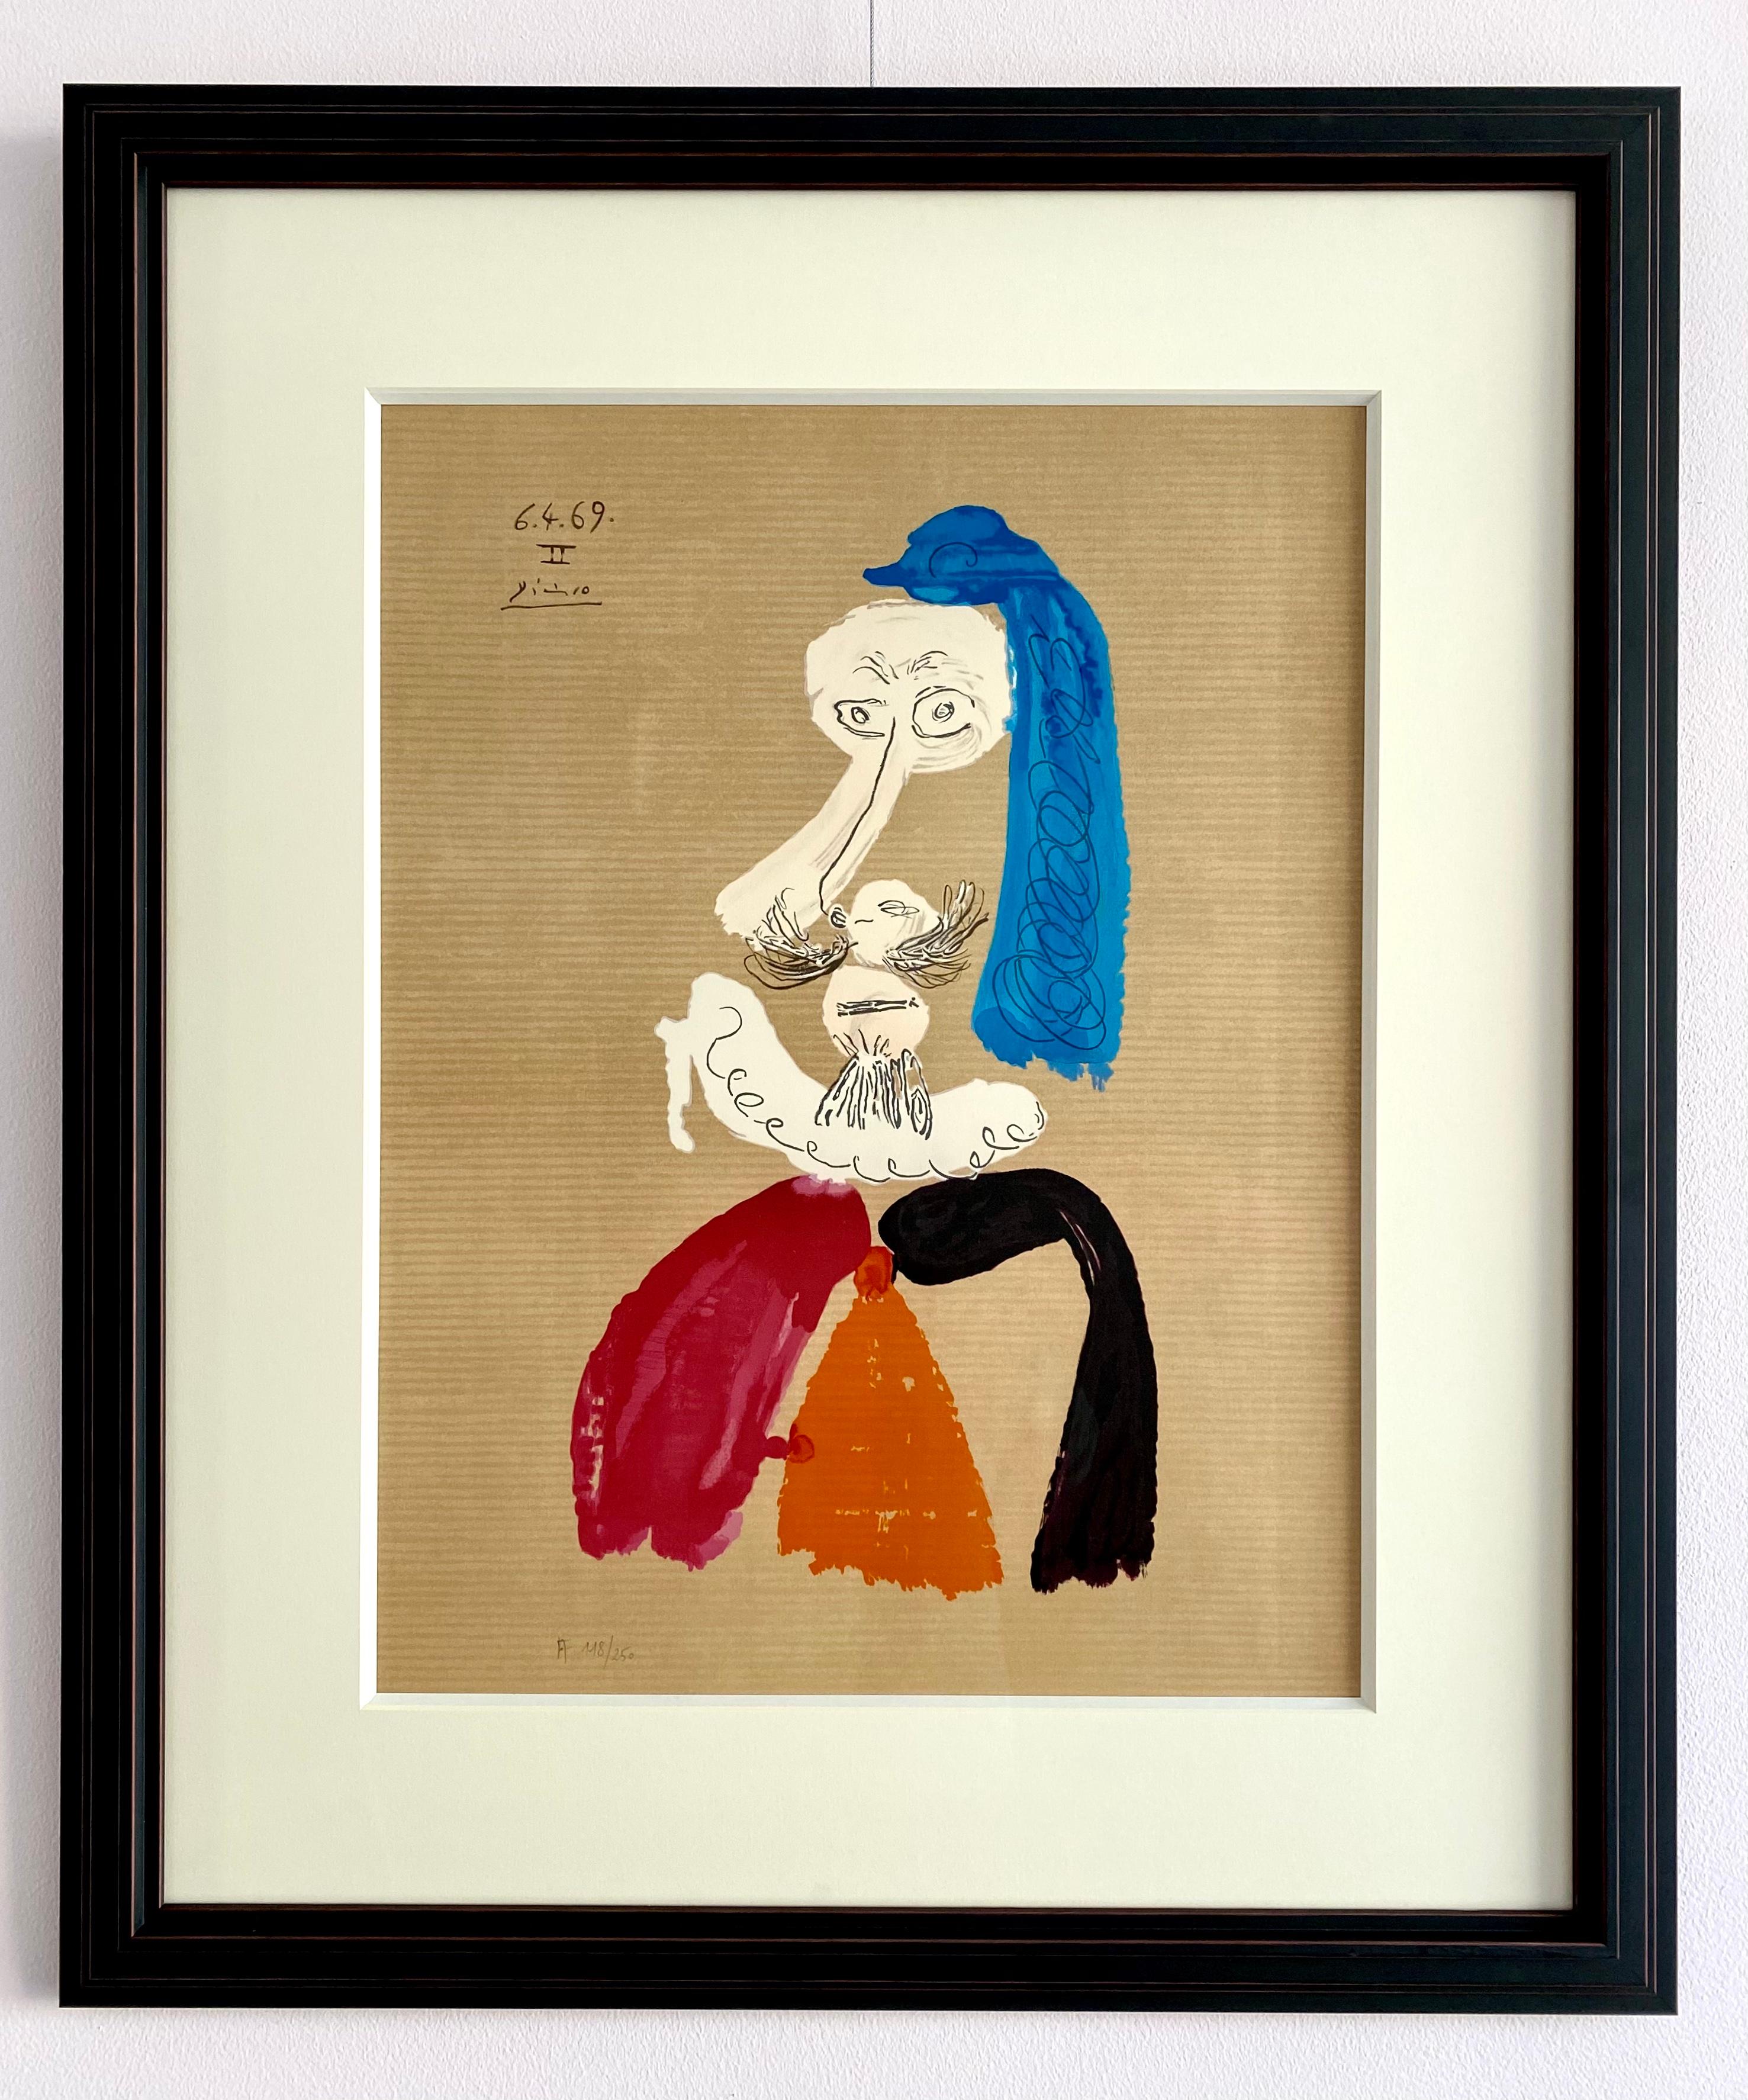 Portrait Imaginaires 6.4.69 II - Print by Pablo Picasso